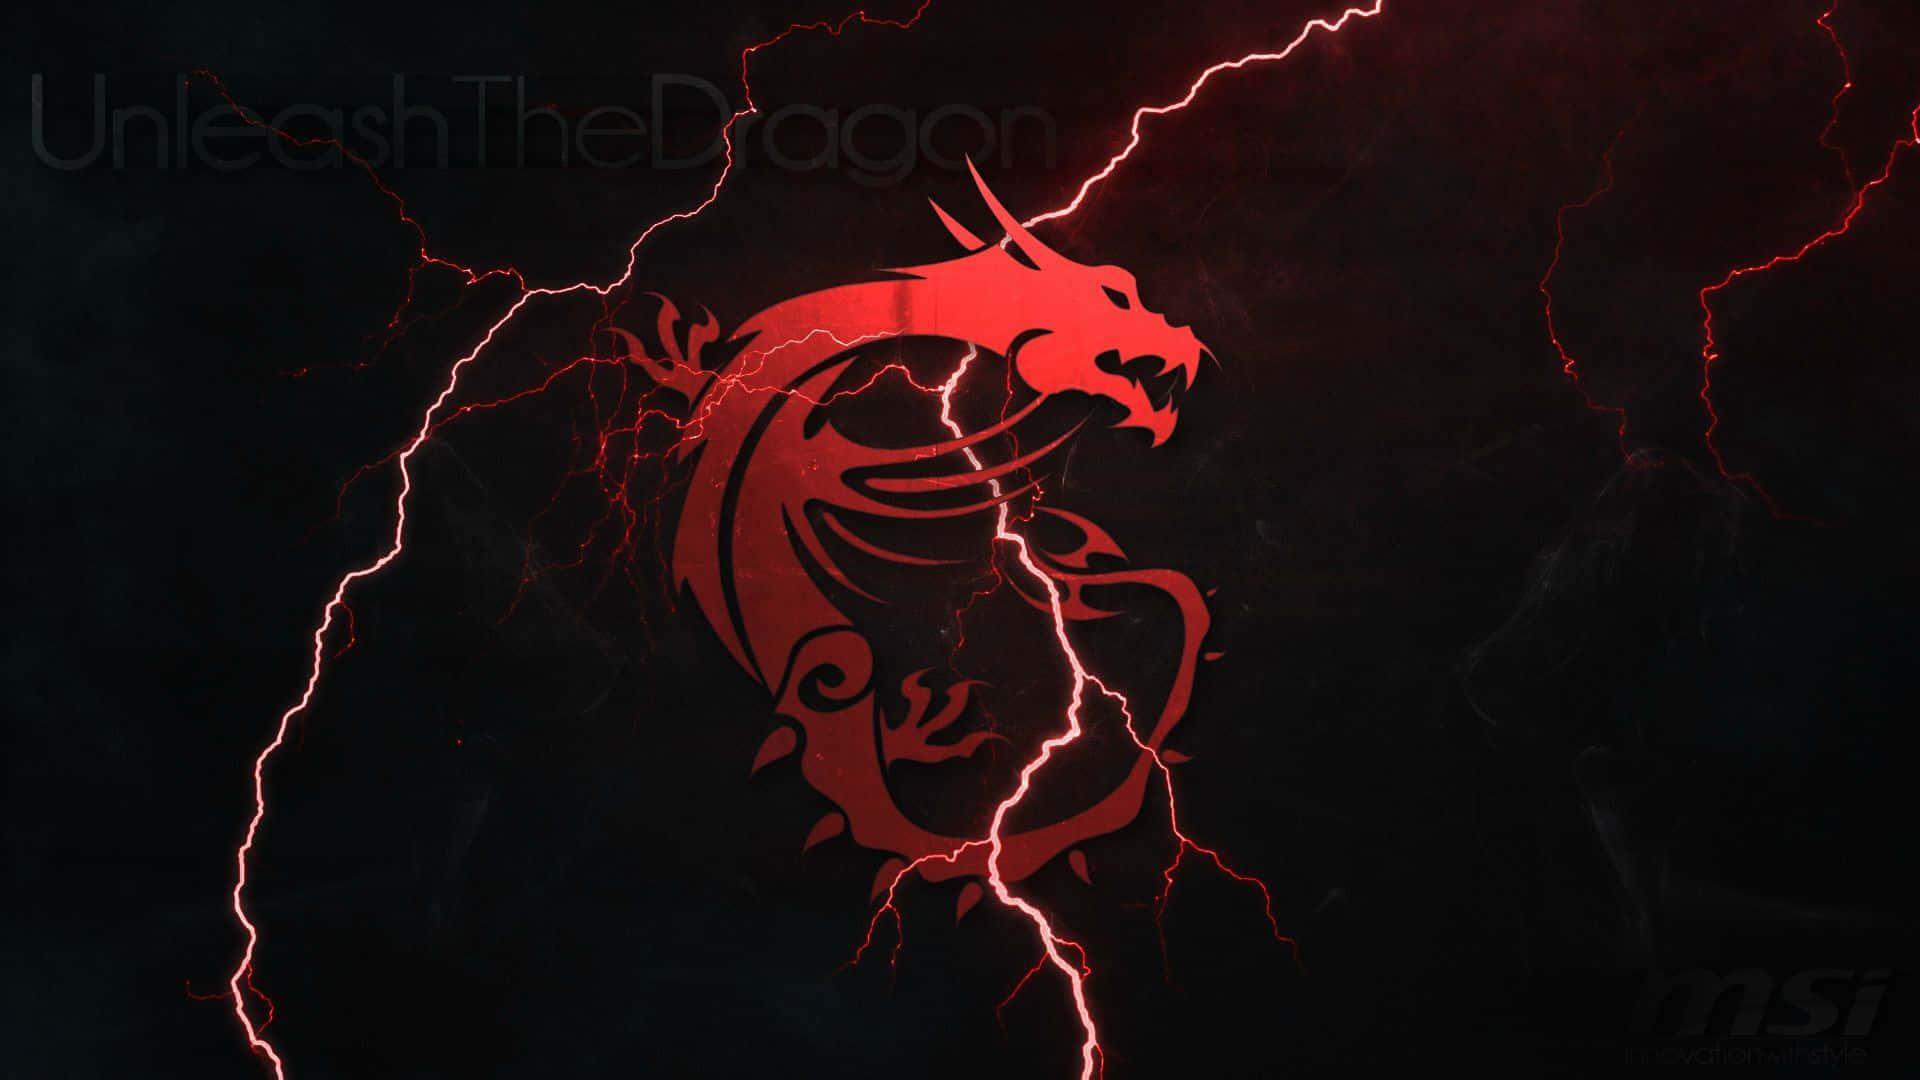 1080p Red Dragon Lightning Wallpaper